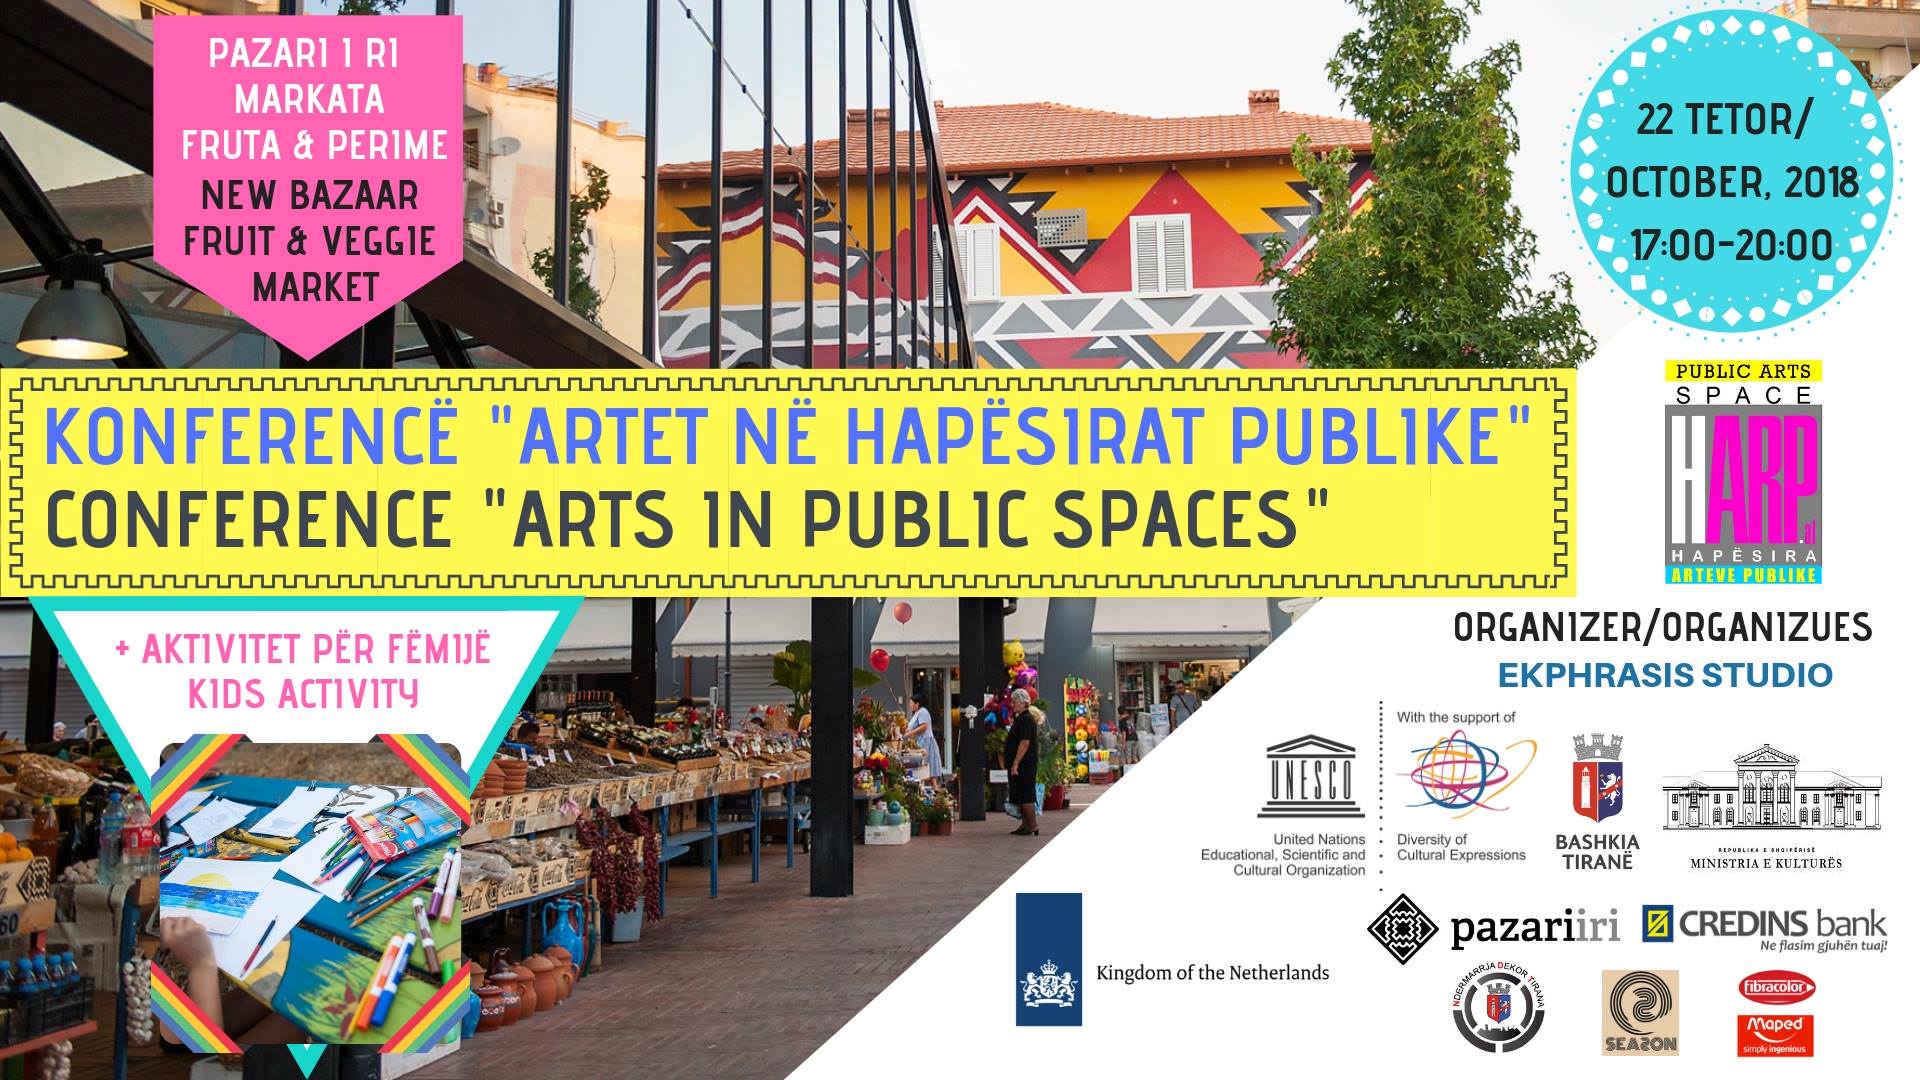 La prima Conferenza Internazionale in Albania sull'arte pubblica